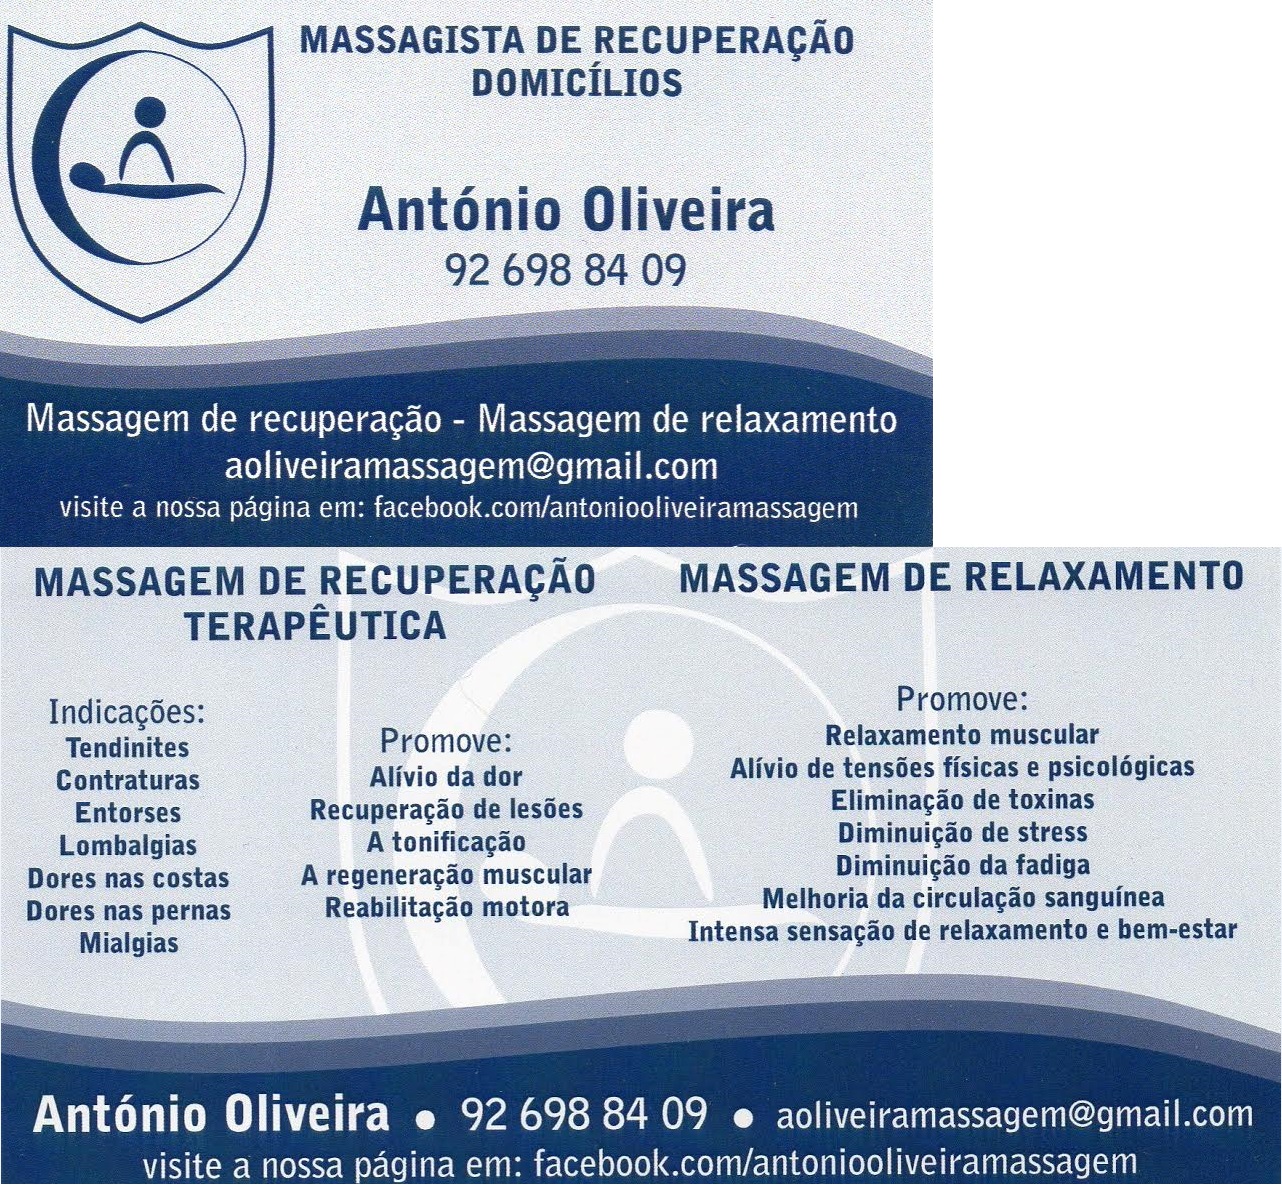 Antnio Oliveira